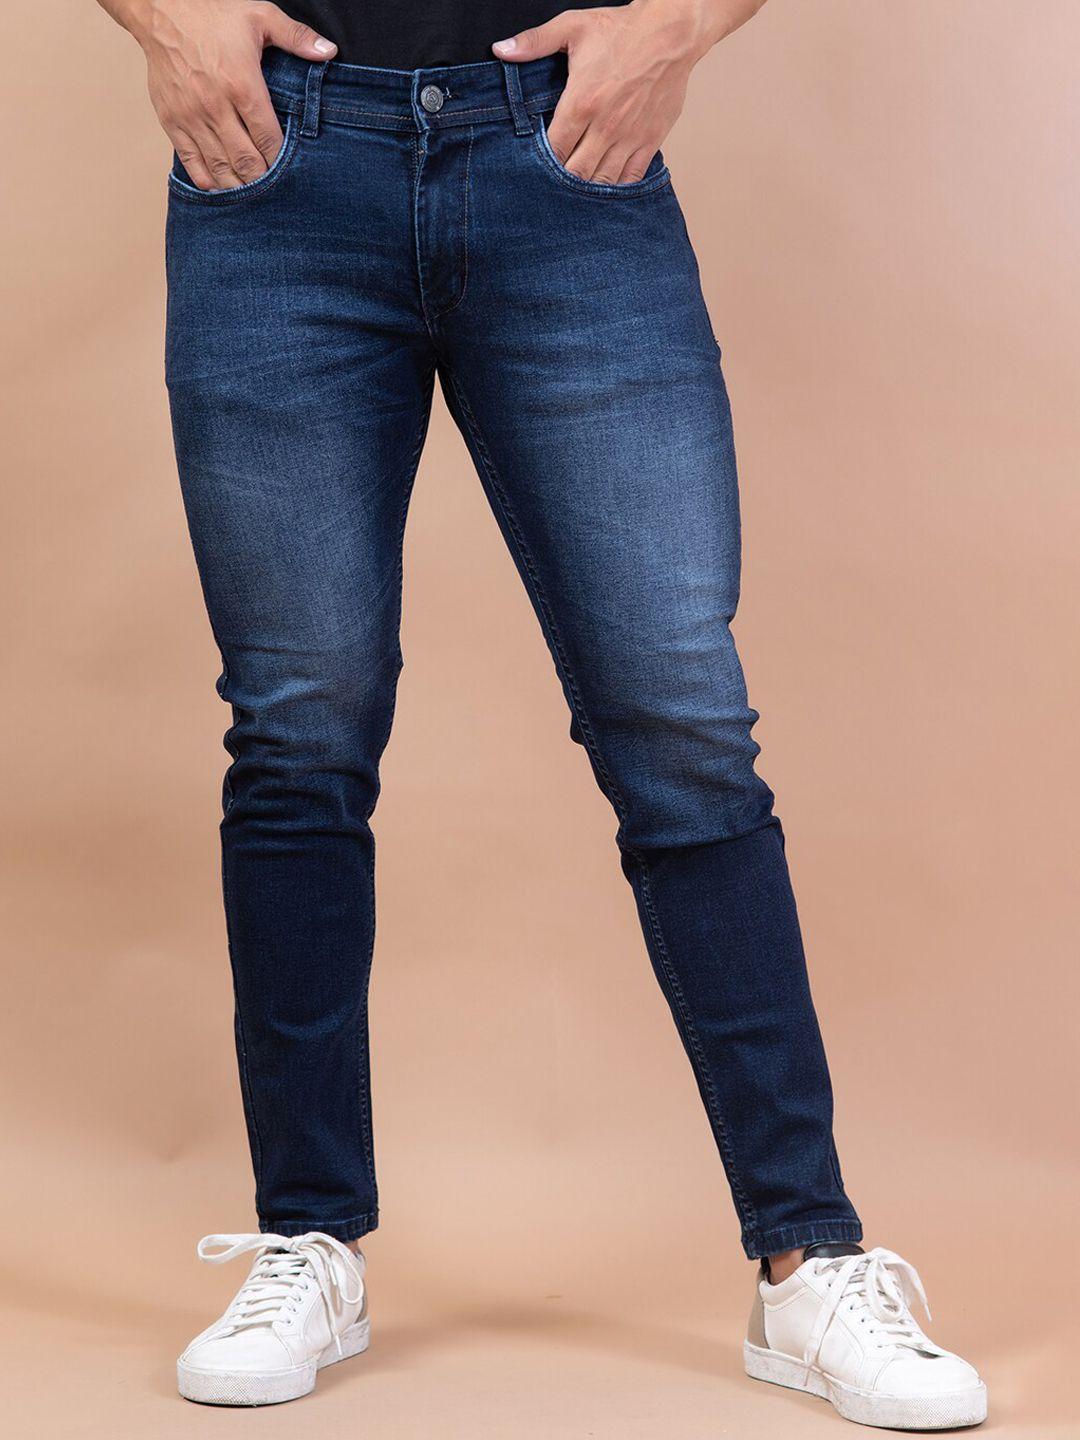 tistabene men blue comfort slim fit light fade denim stretchable jeans